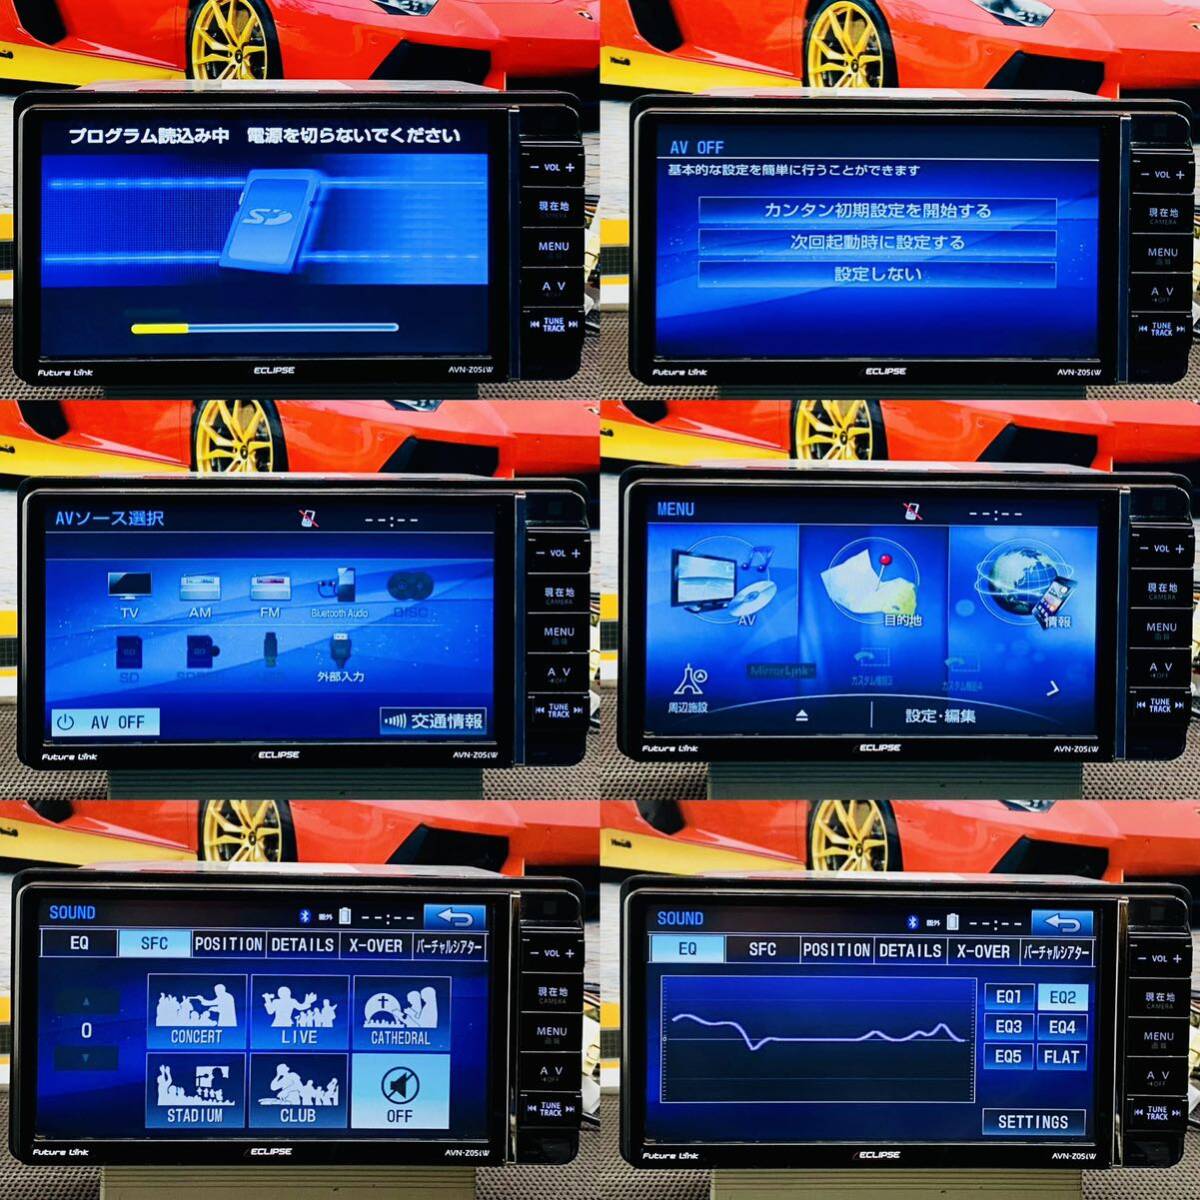 【保証付動作】 ECLIPSE イクリプス AVN-Z05iW SDナビ 地デジフルセグTV CD/SD/SDREC/DVD/USB/WiFi/Bluetooth/外部入力(HDMI)/オーディオの画像2